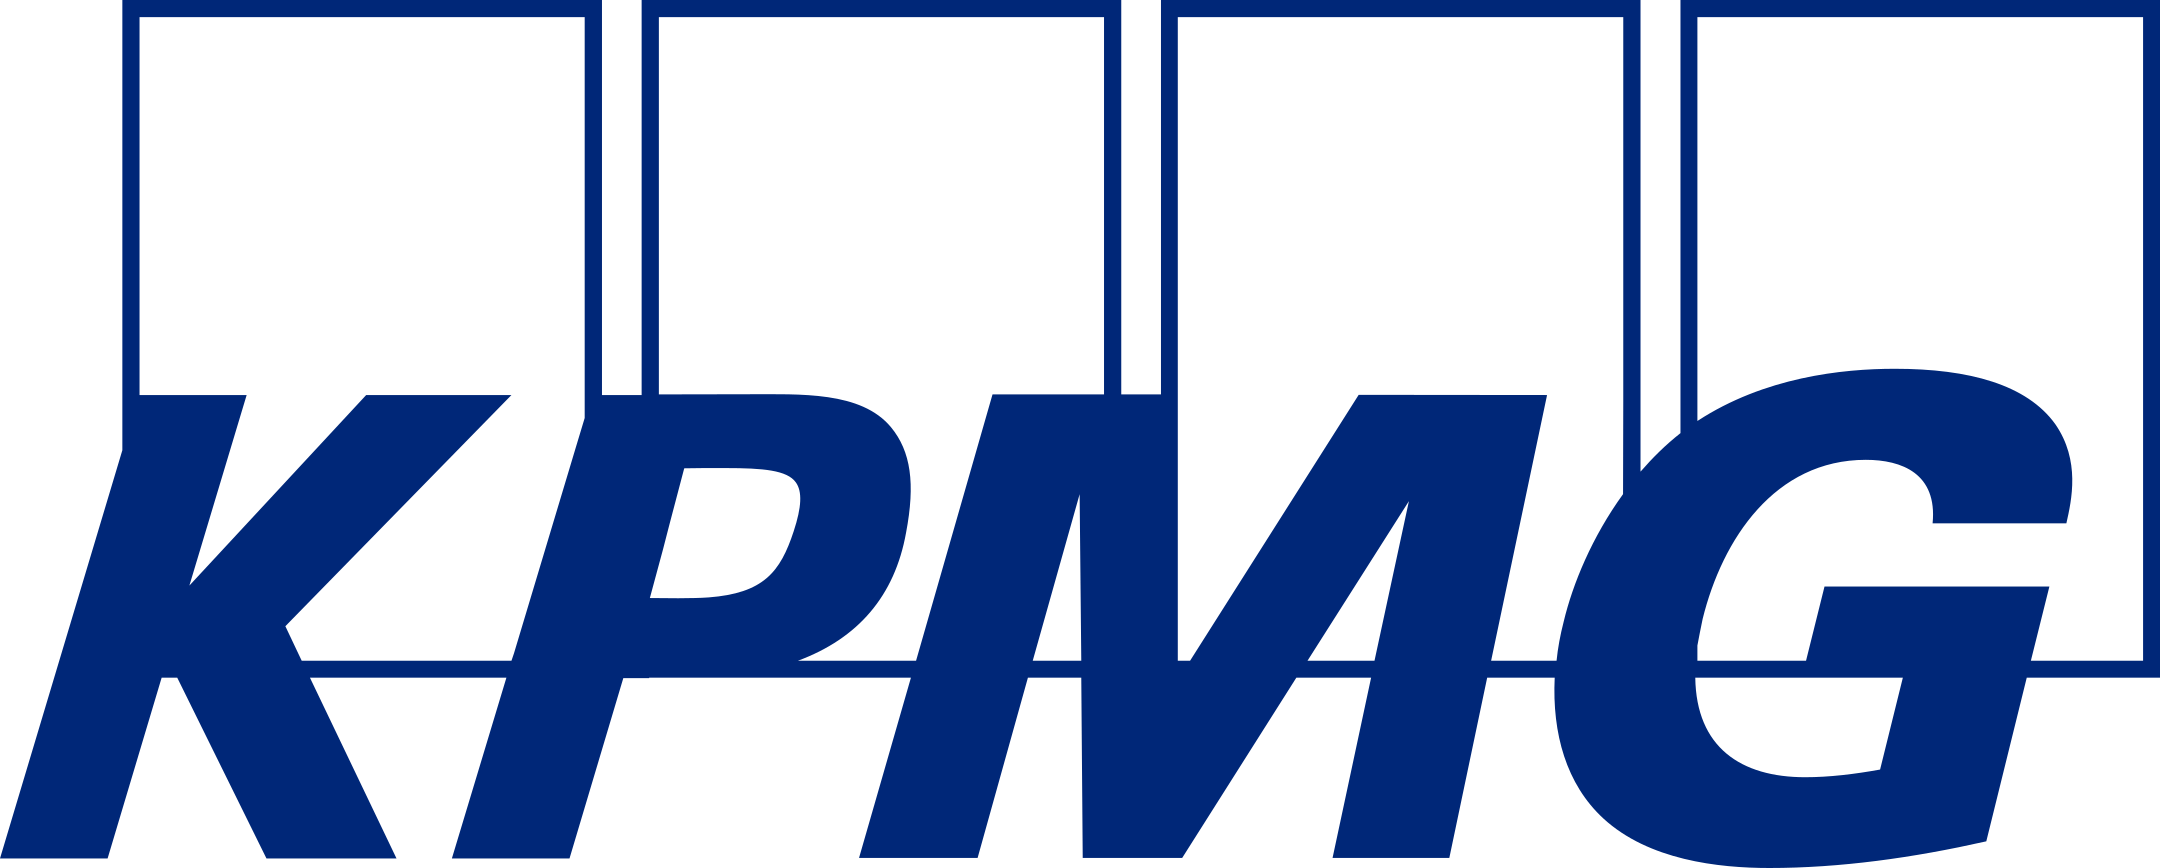 Kpmg logo 1 2